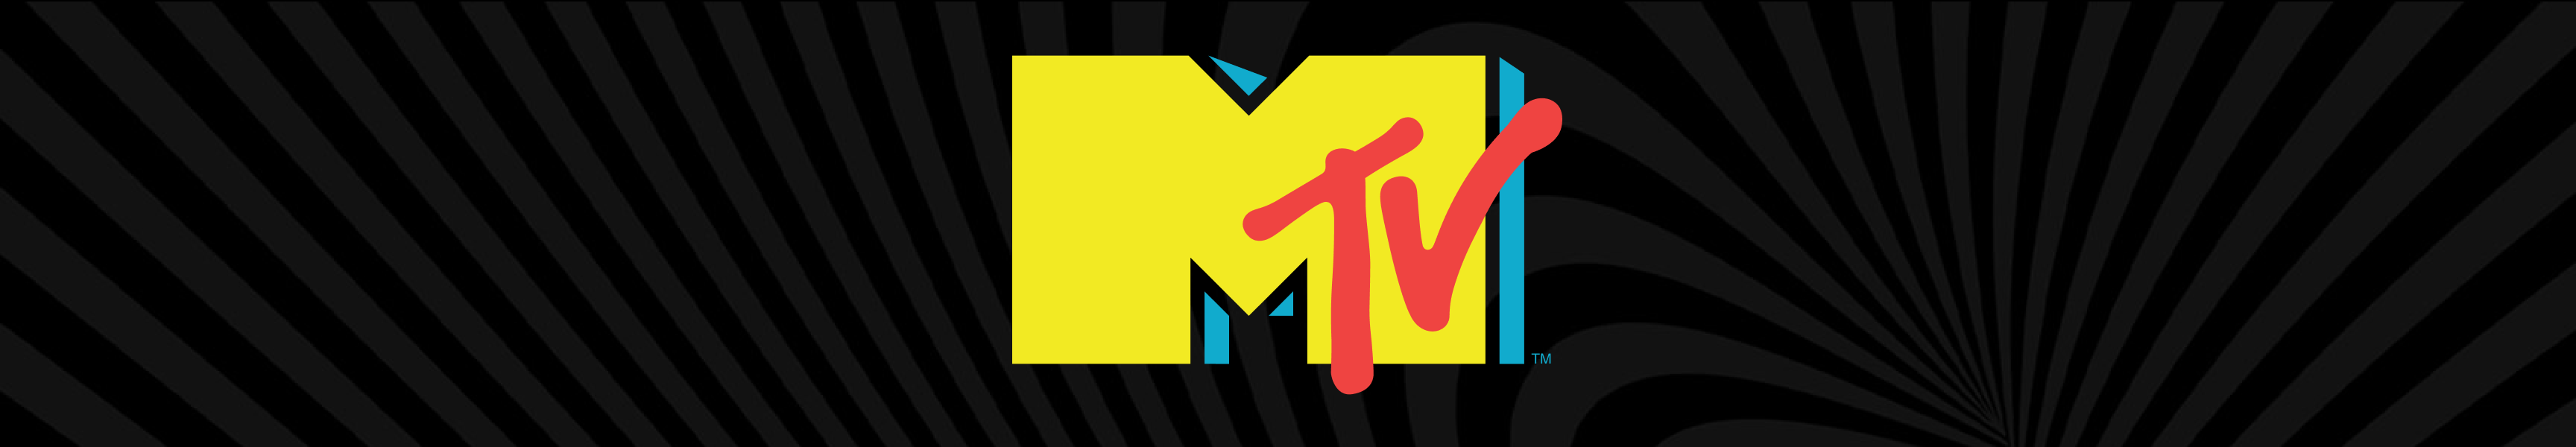 Tazas de café MTV